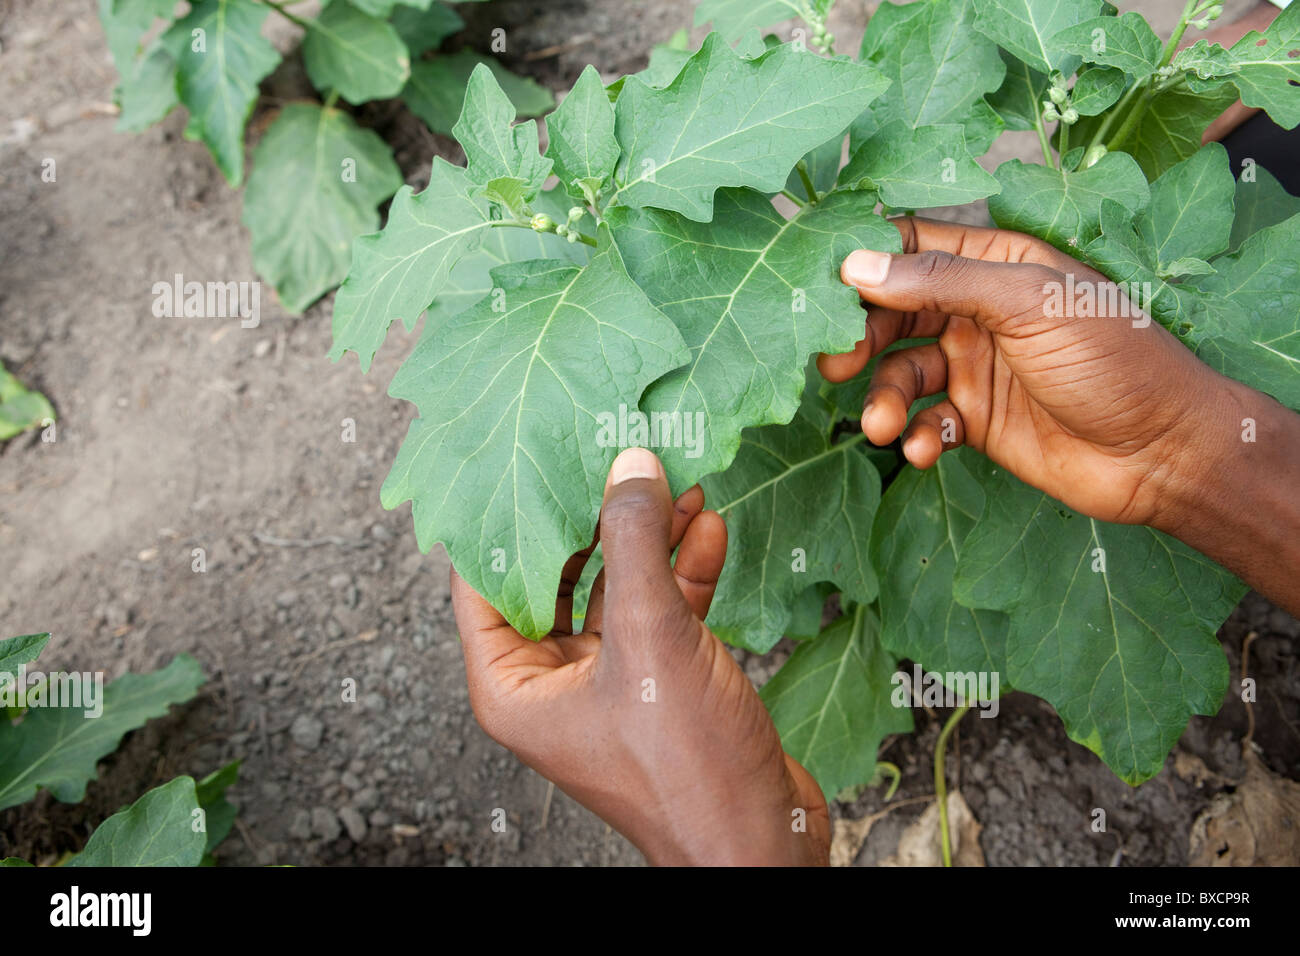 Farmer's hands dans un champ de légumes - Masiaka, Sierra Leone, Afrique de l'Ouest. Banque D'Images